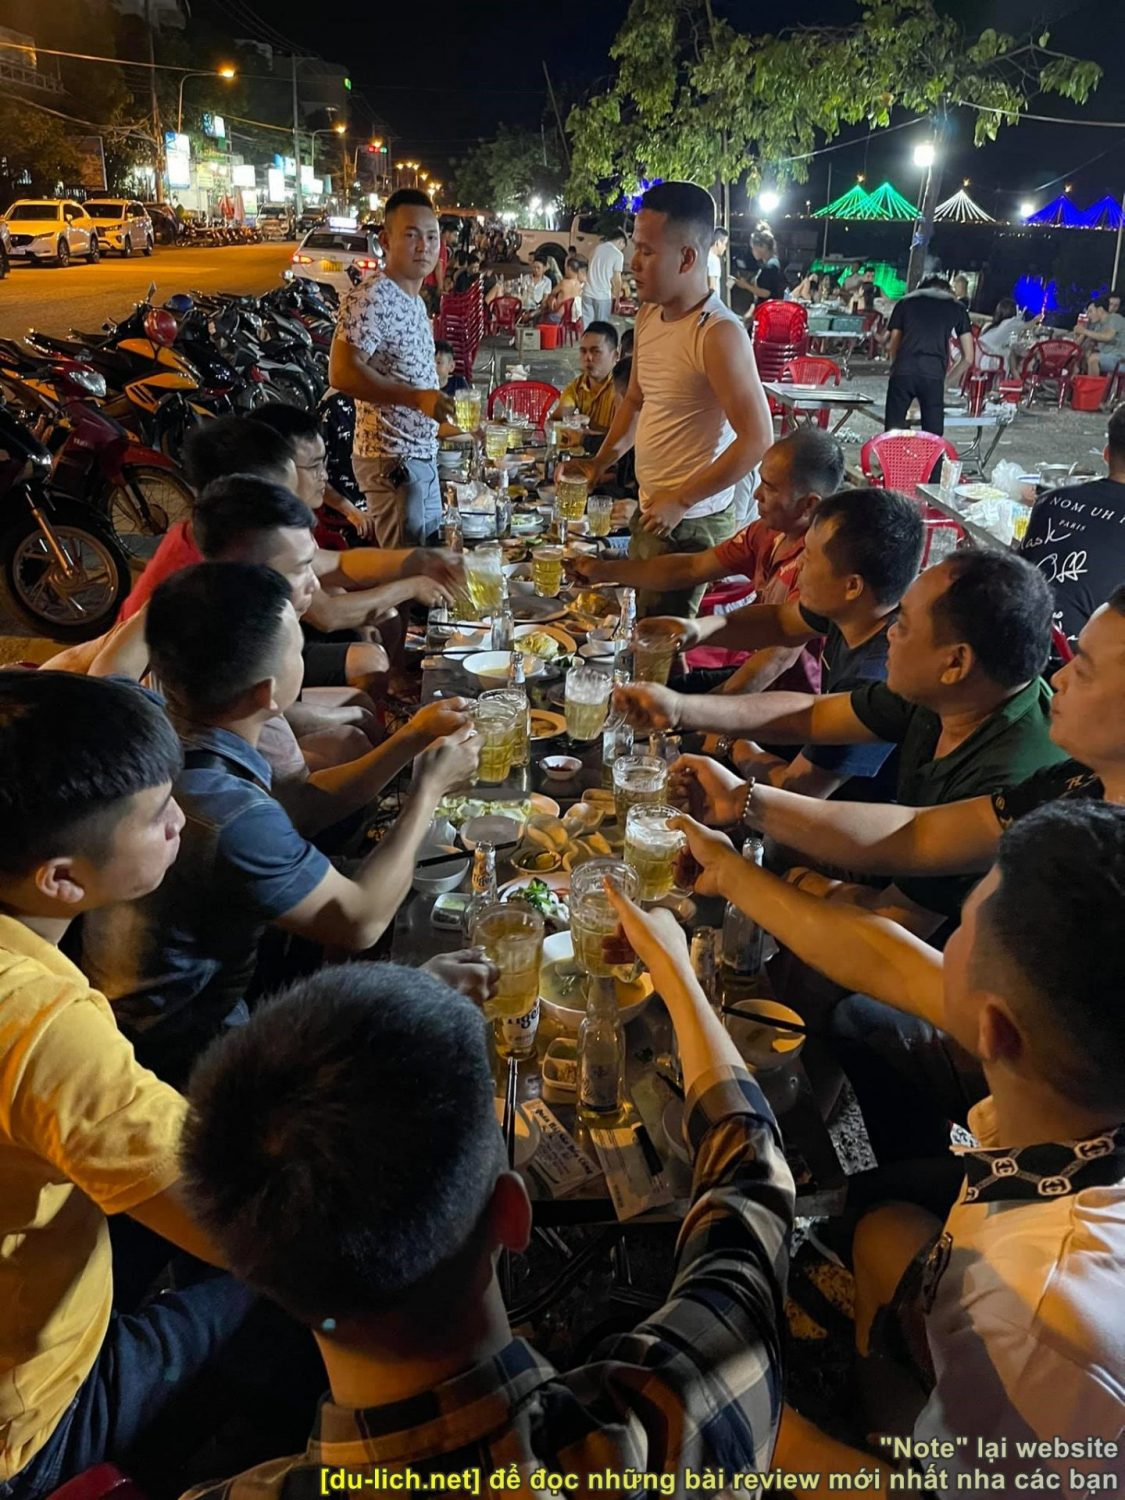 Khách ăn nhậu tại quán hải sản Bến cảng ở khu vực cầu Bình Tân - Hòn Rớ (Nha Trang)